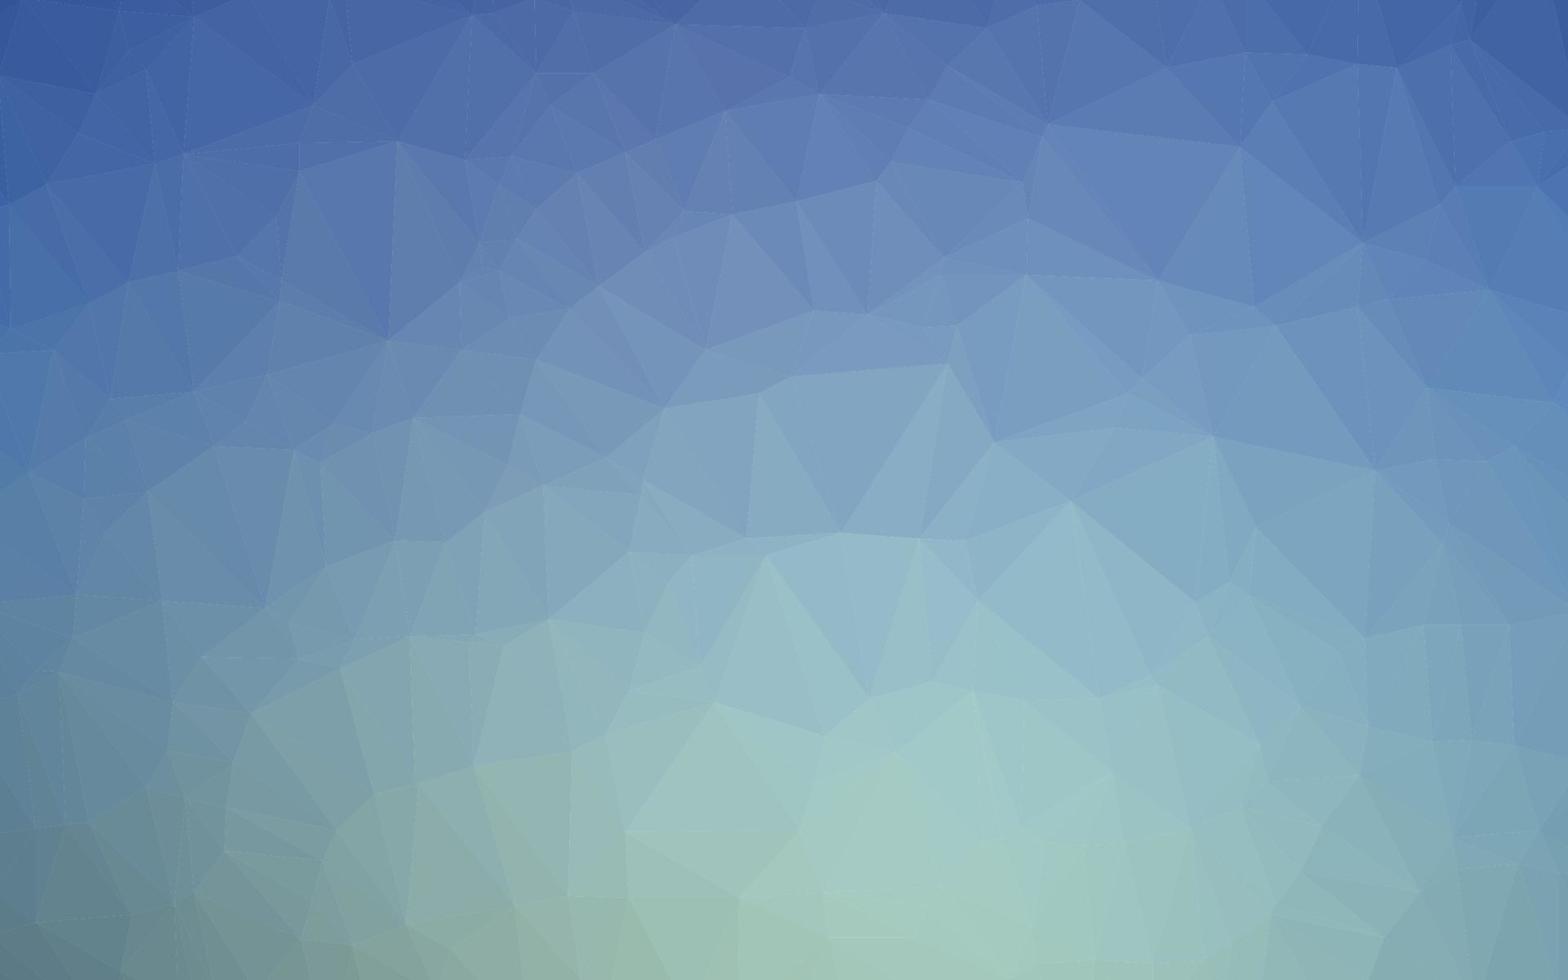 plantilla de triángulo borroso vector azul claro.